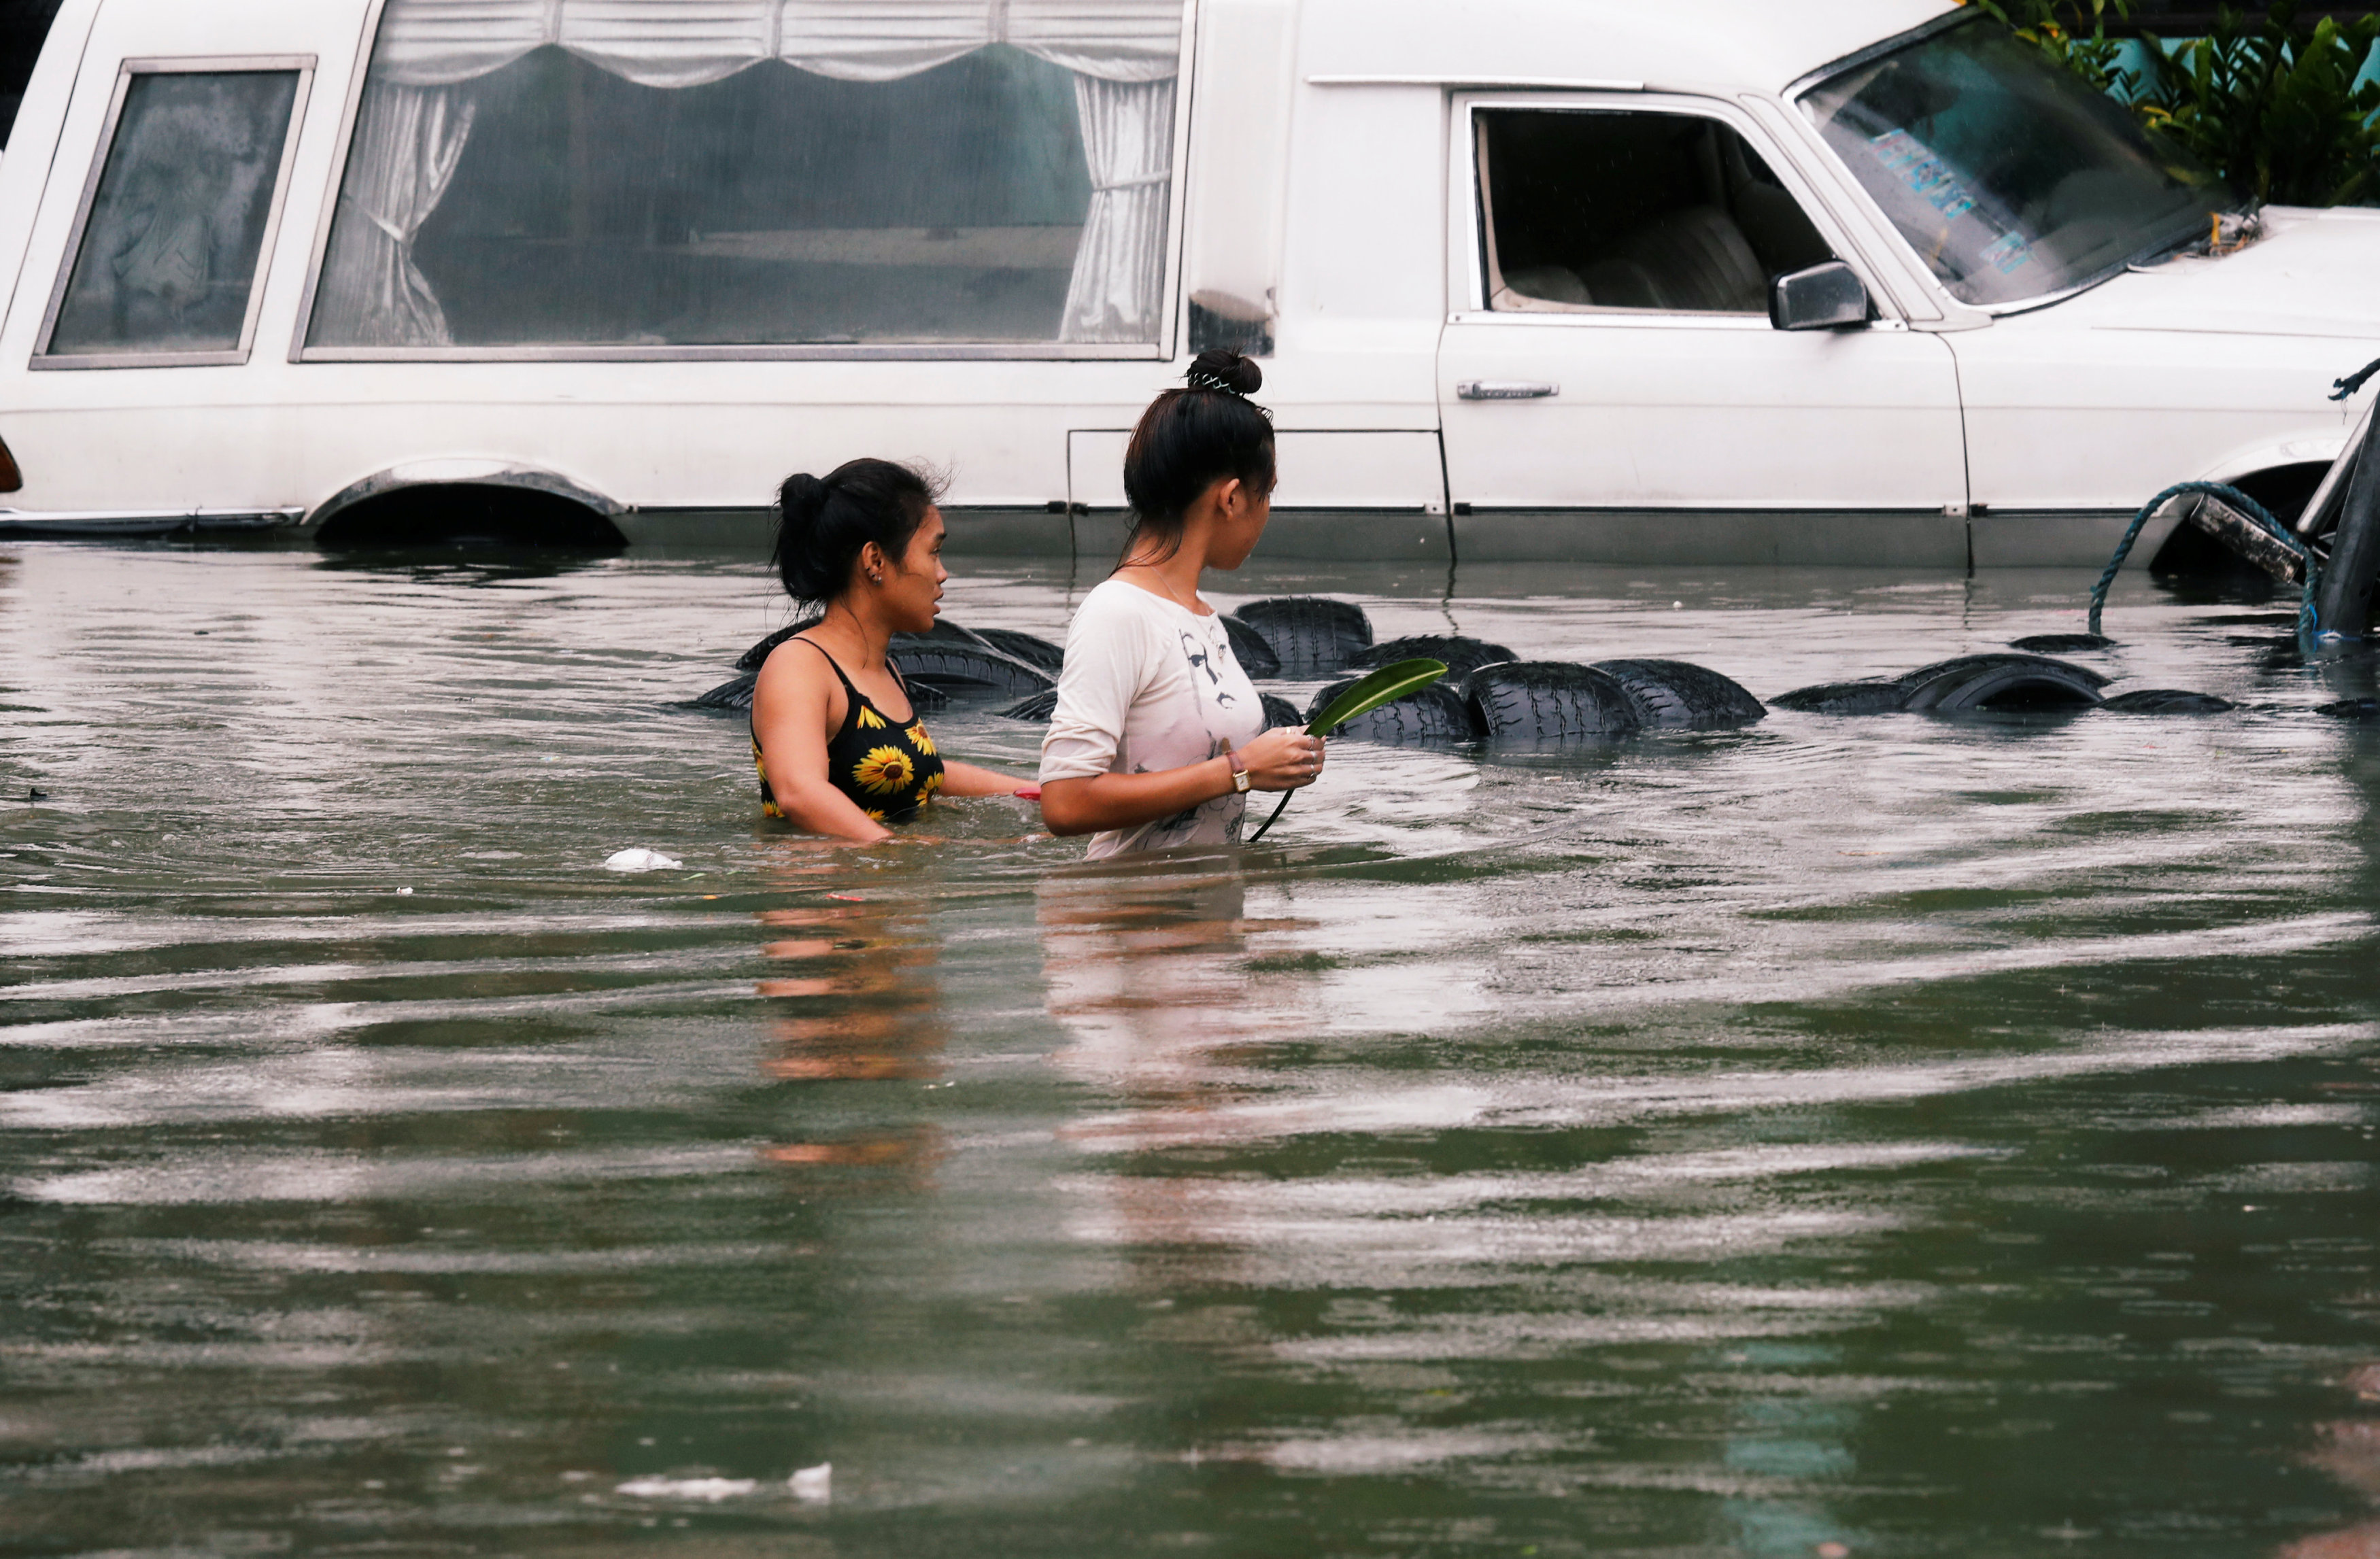 فتاتان تنظران بحسرة على سيارتهما التى تغطيها المياه